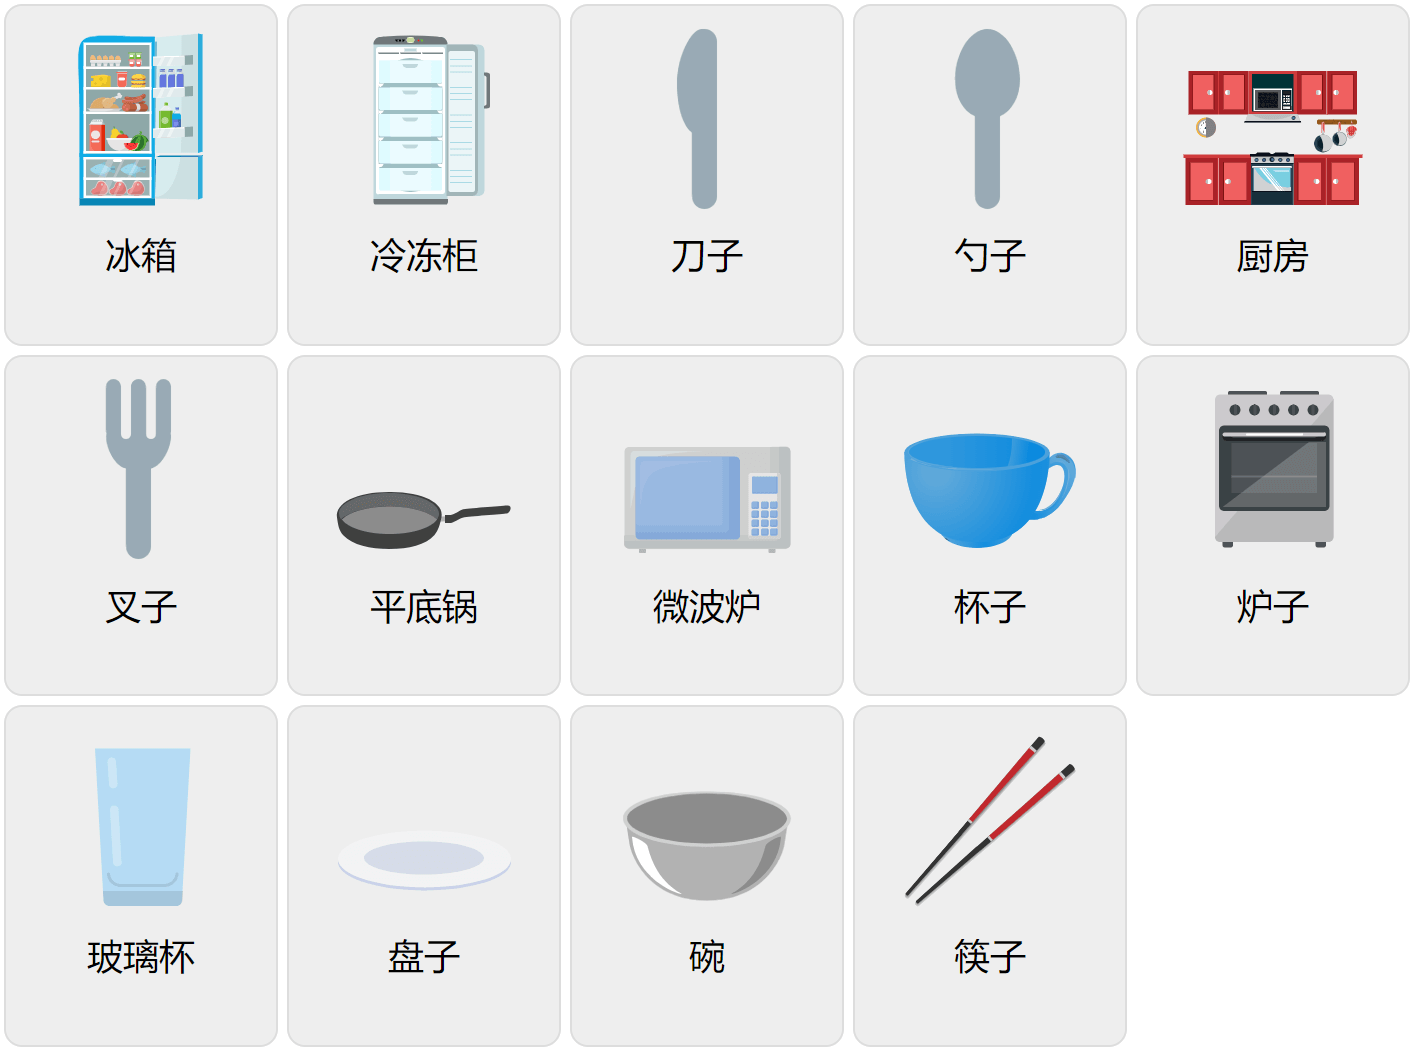 Кухонная лексика на китайском языке